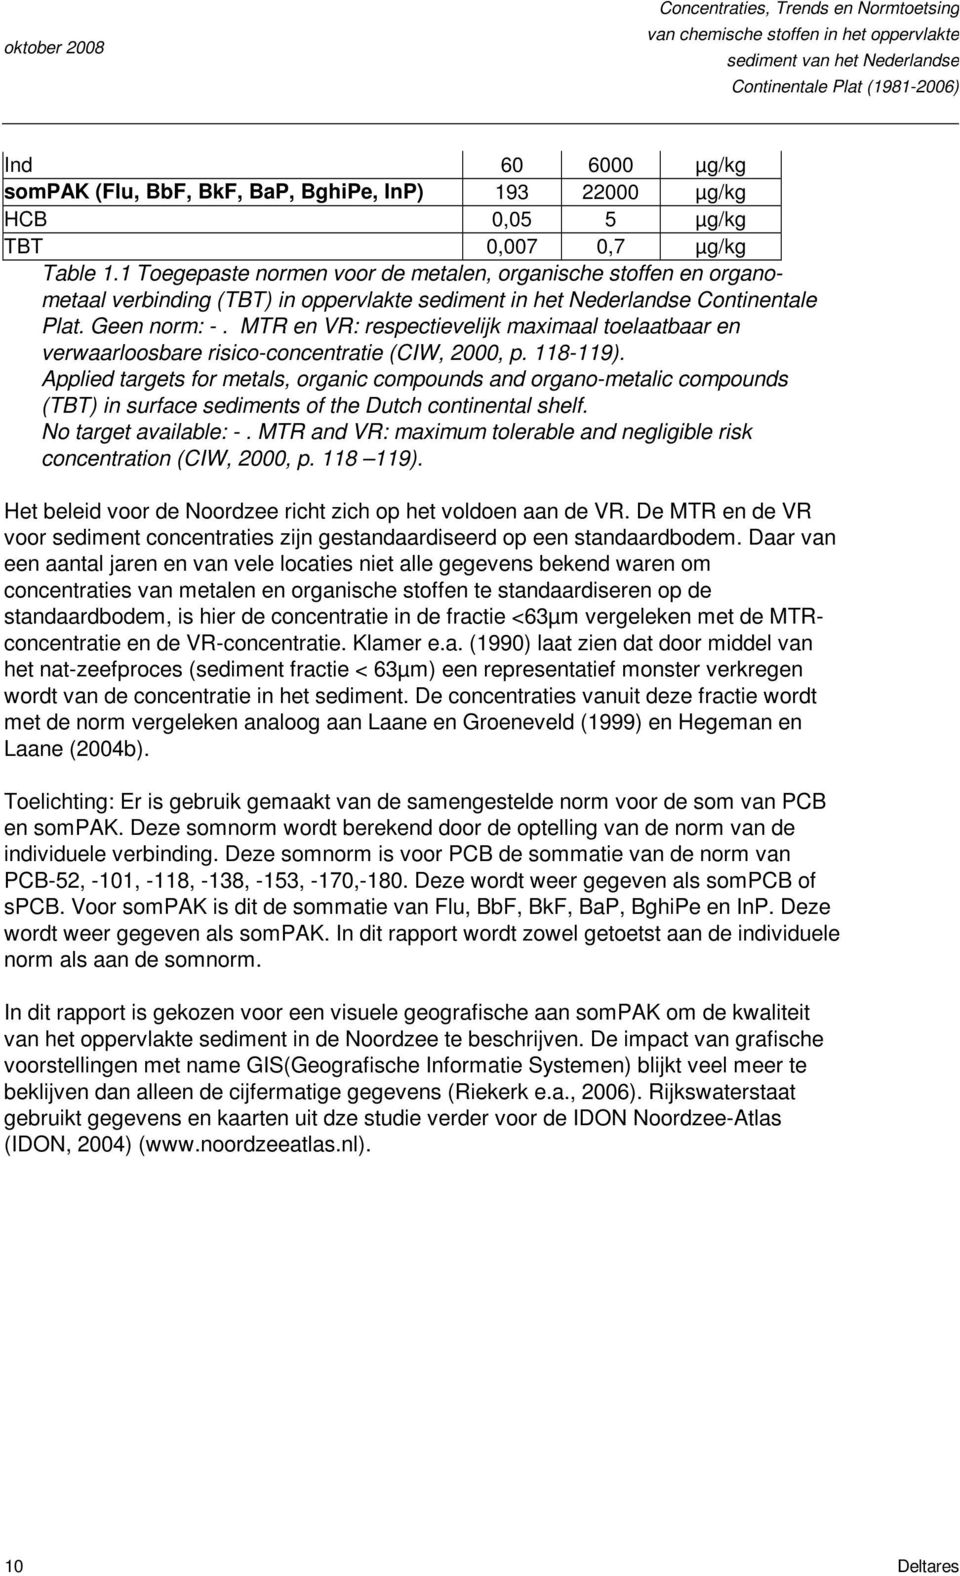 1 Toegepaste normen voor de metalen, organische stoffen en organometaal verbinding (TBT) in oppervlakte sediment in het Nederlandse Continentale Plat. Geen norm: -.